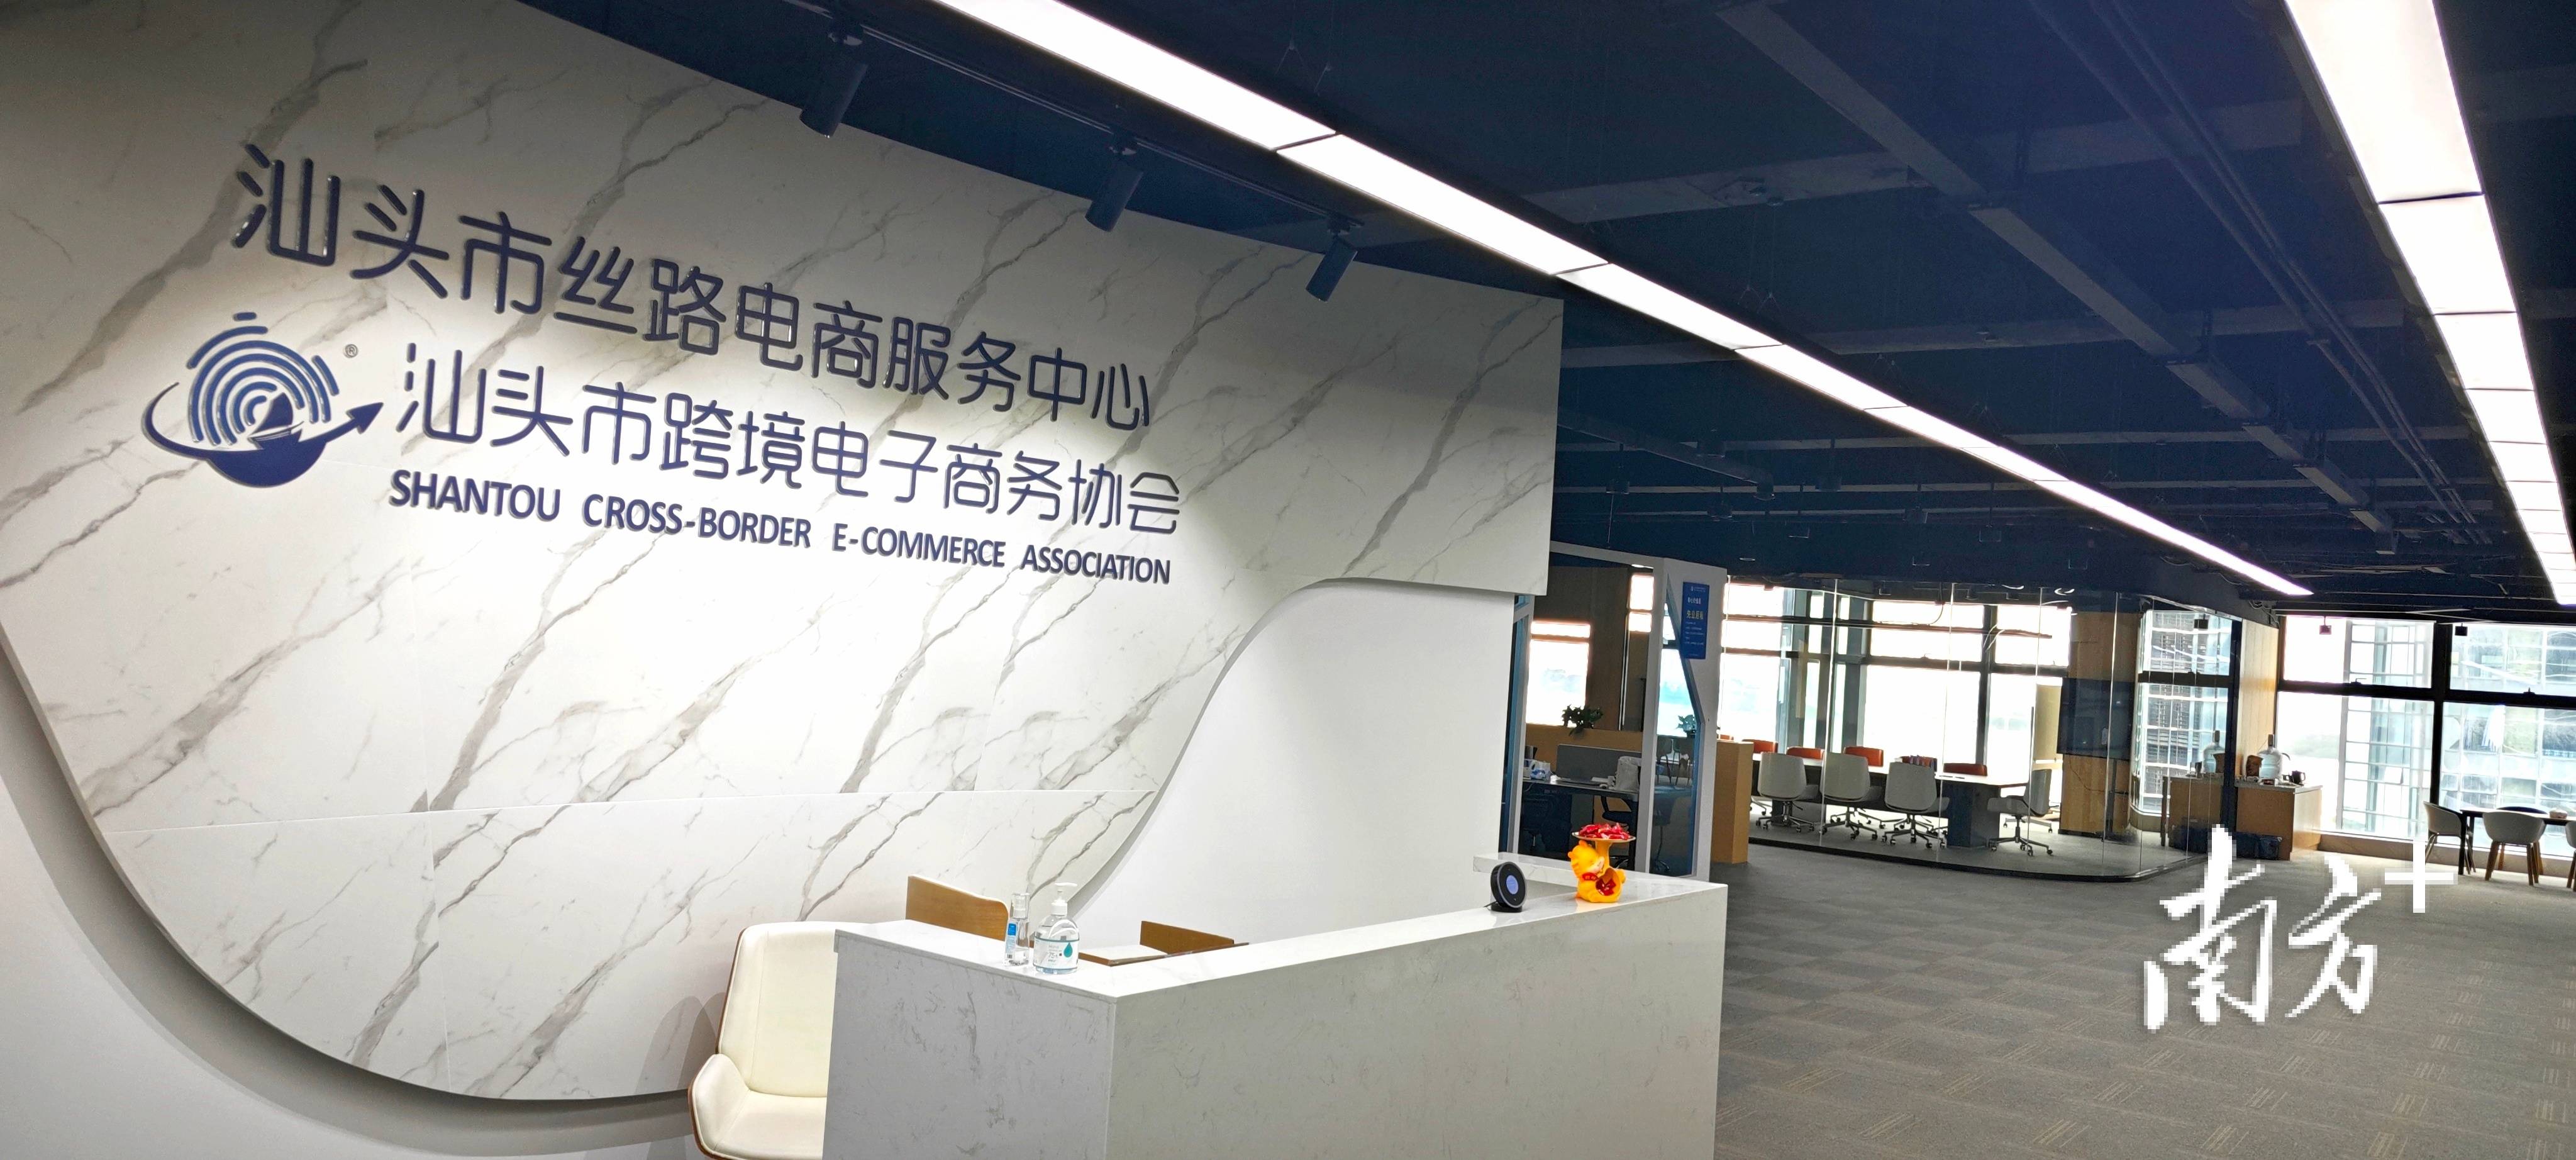 汕头丝路电商服务中心打造跨境电商五百强企业共享办公室